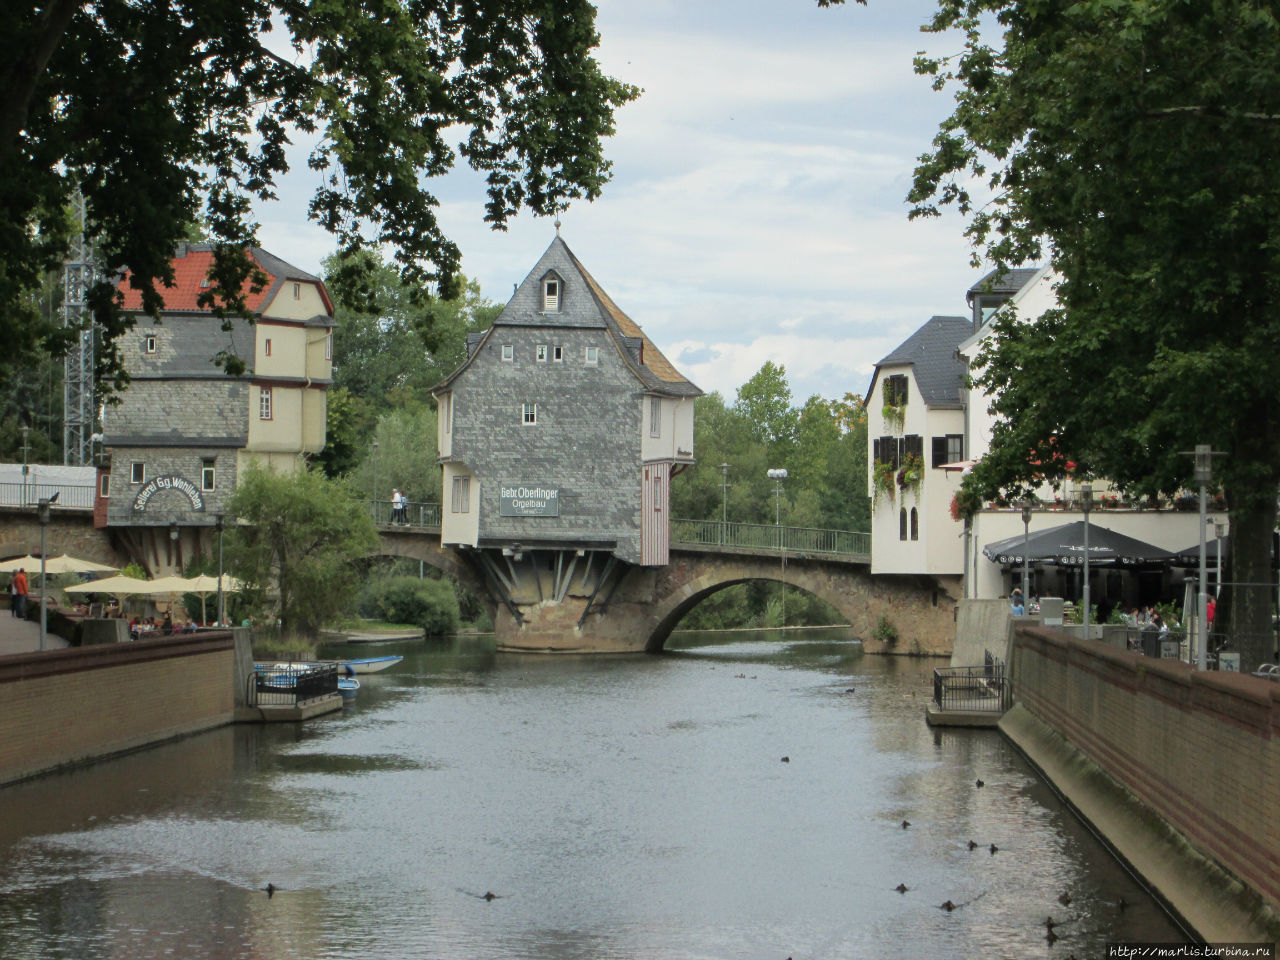 Каменный мост через Наю (1300г.) и ставшие символом города  домики на мосту — Брюкенхойзер (1495 г.) Бад-Кройцнах, Германия